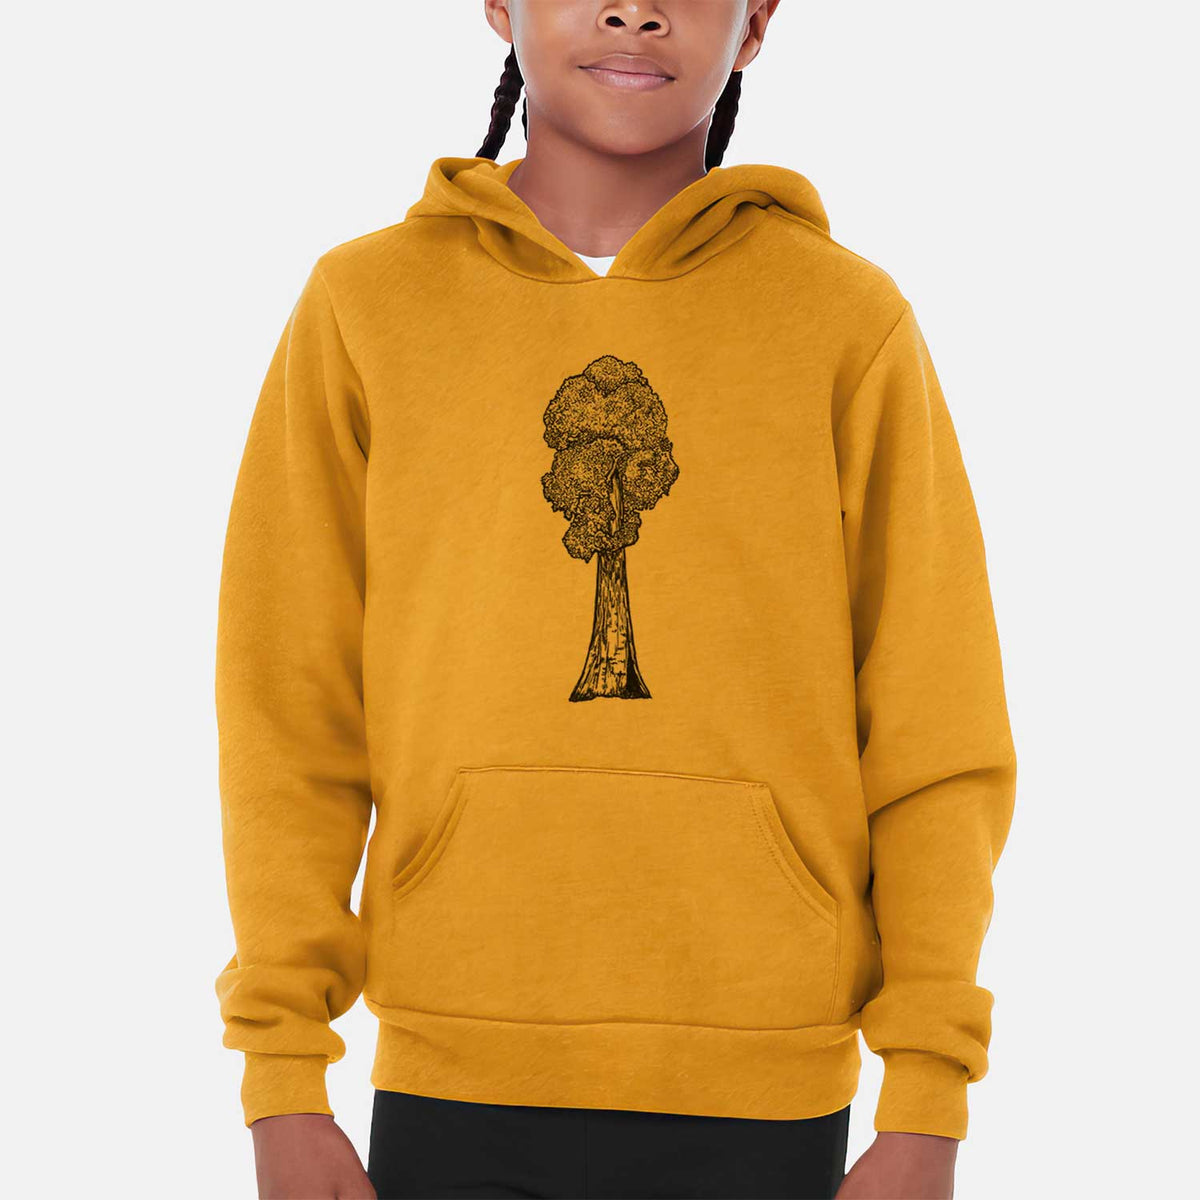 Sequoia - Youth Hoodie Sweatshirt